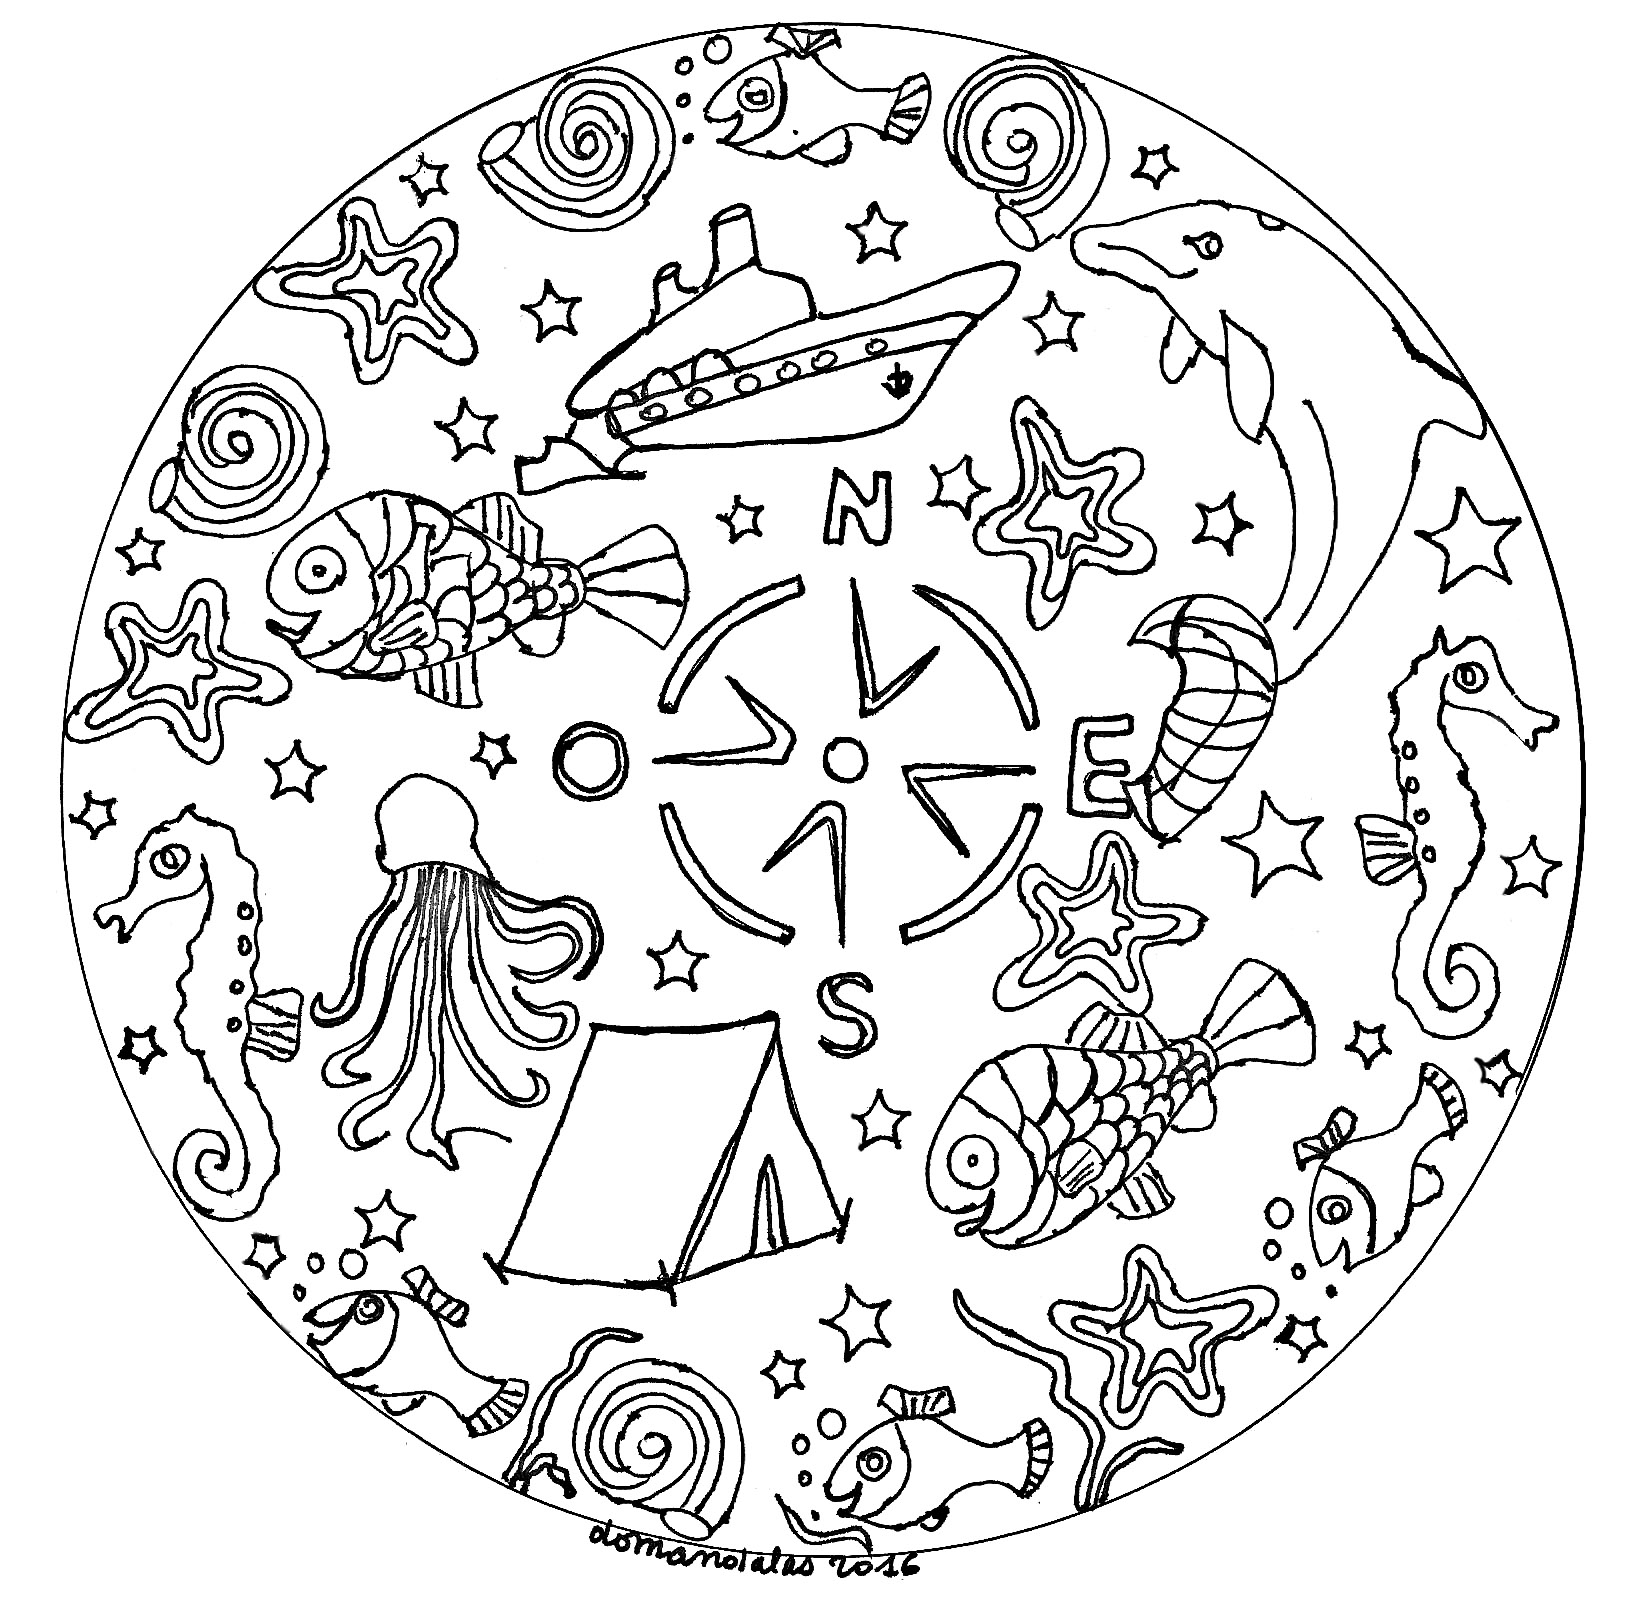 Mandala a tema natalizio. Un semplice mandala con graziosi motivi di vacanza, Artista : Domandalas